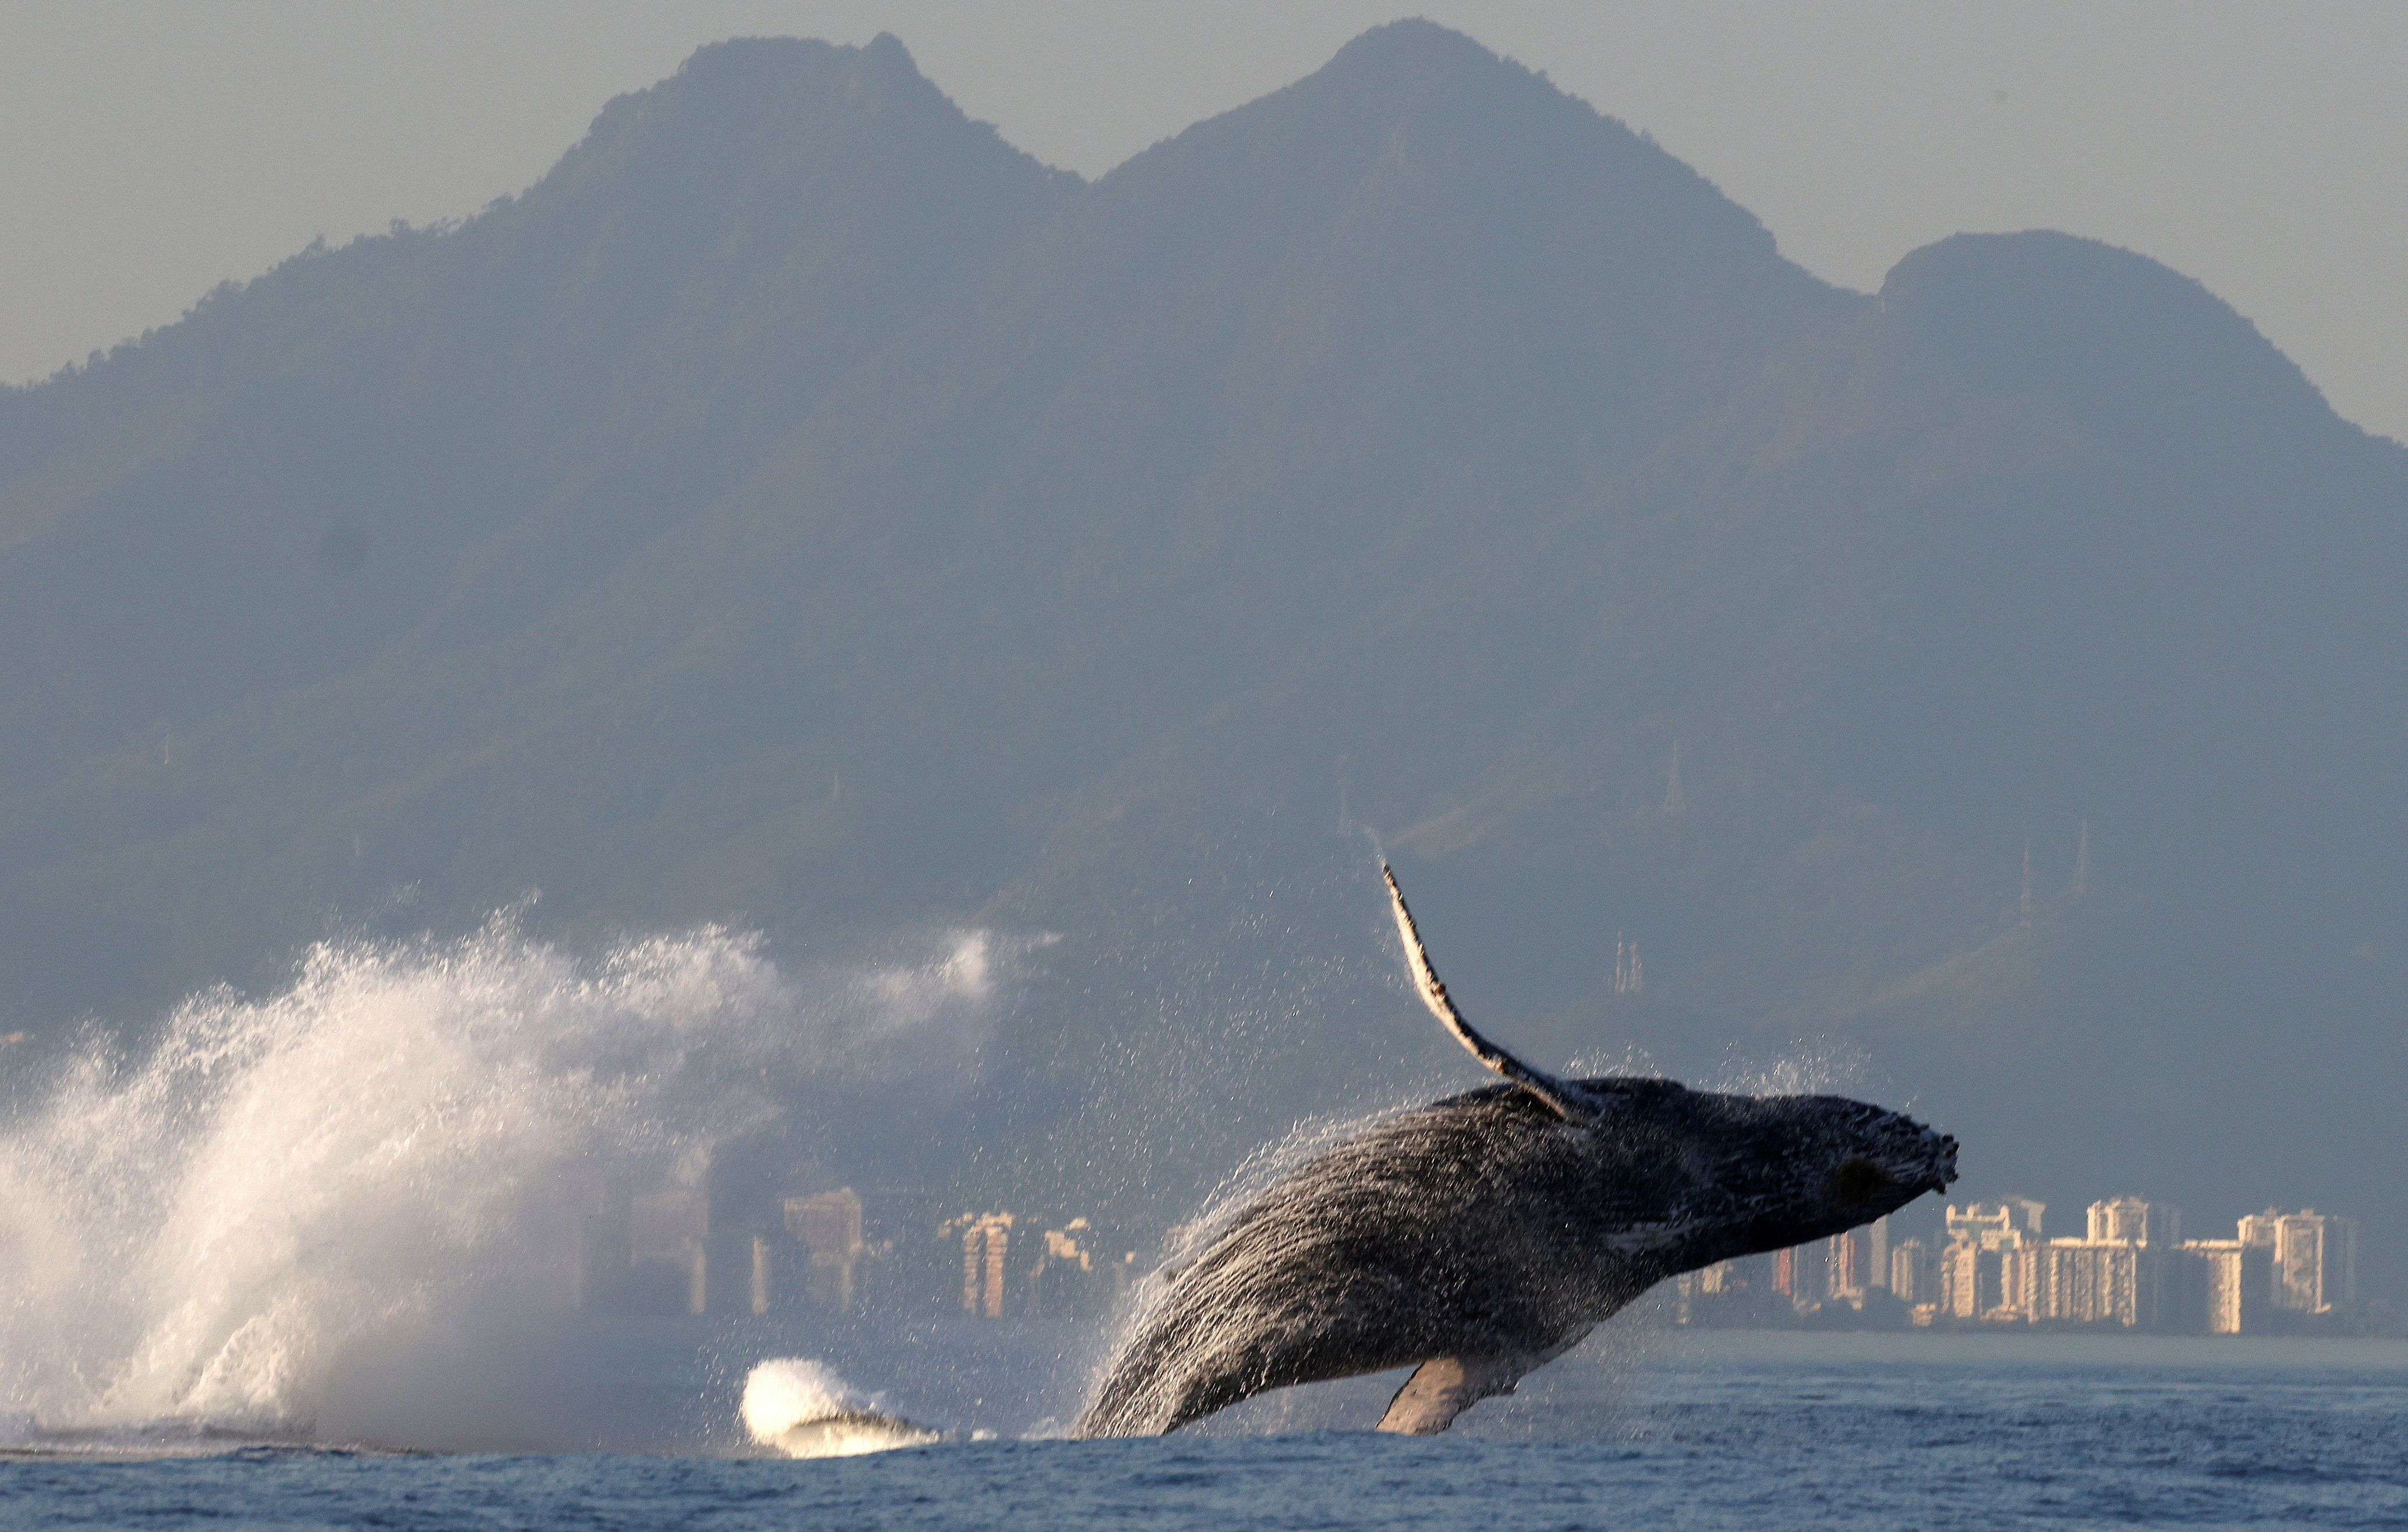 A humpback whale jumps above water near Recreio dos Bandeirantes beach in Rio de Janeiro, Brazil